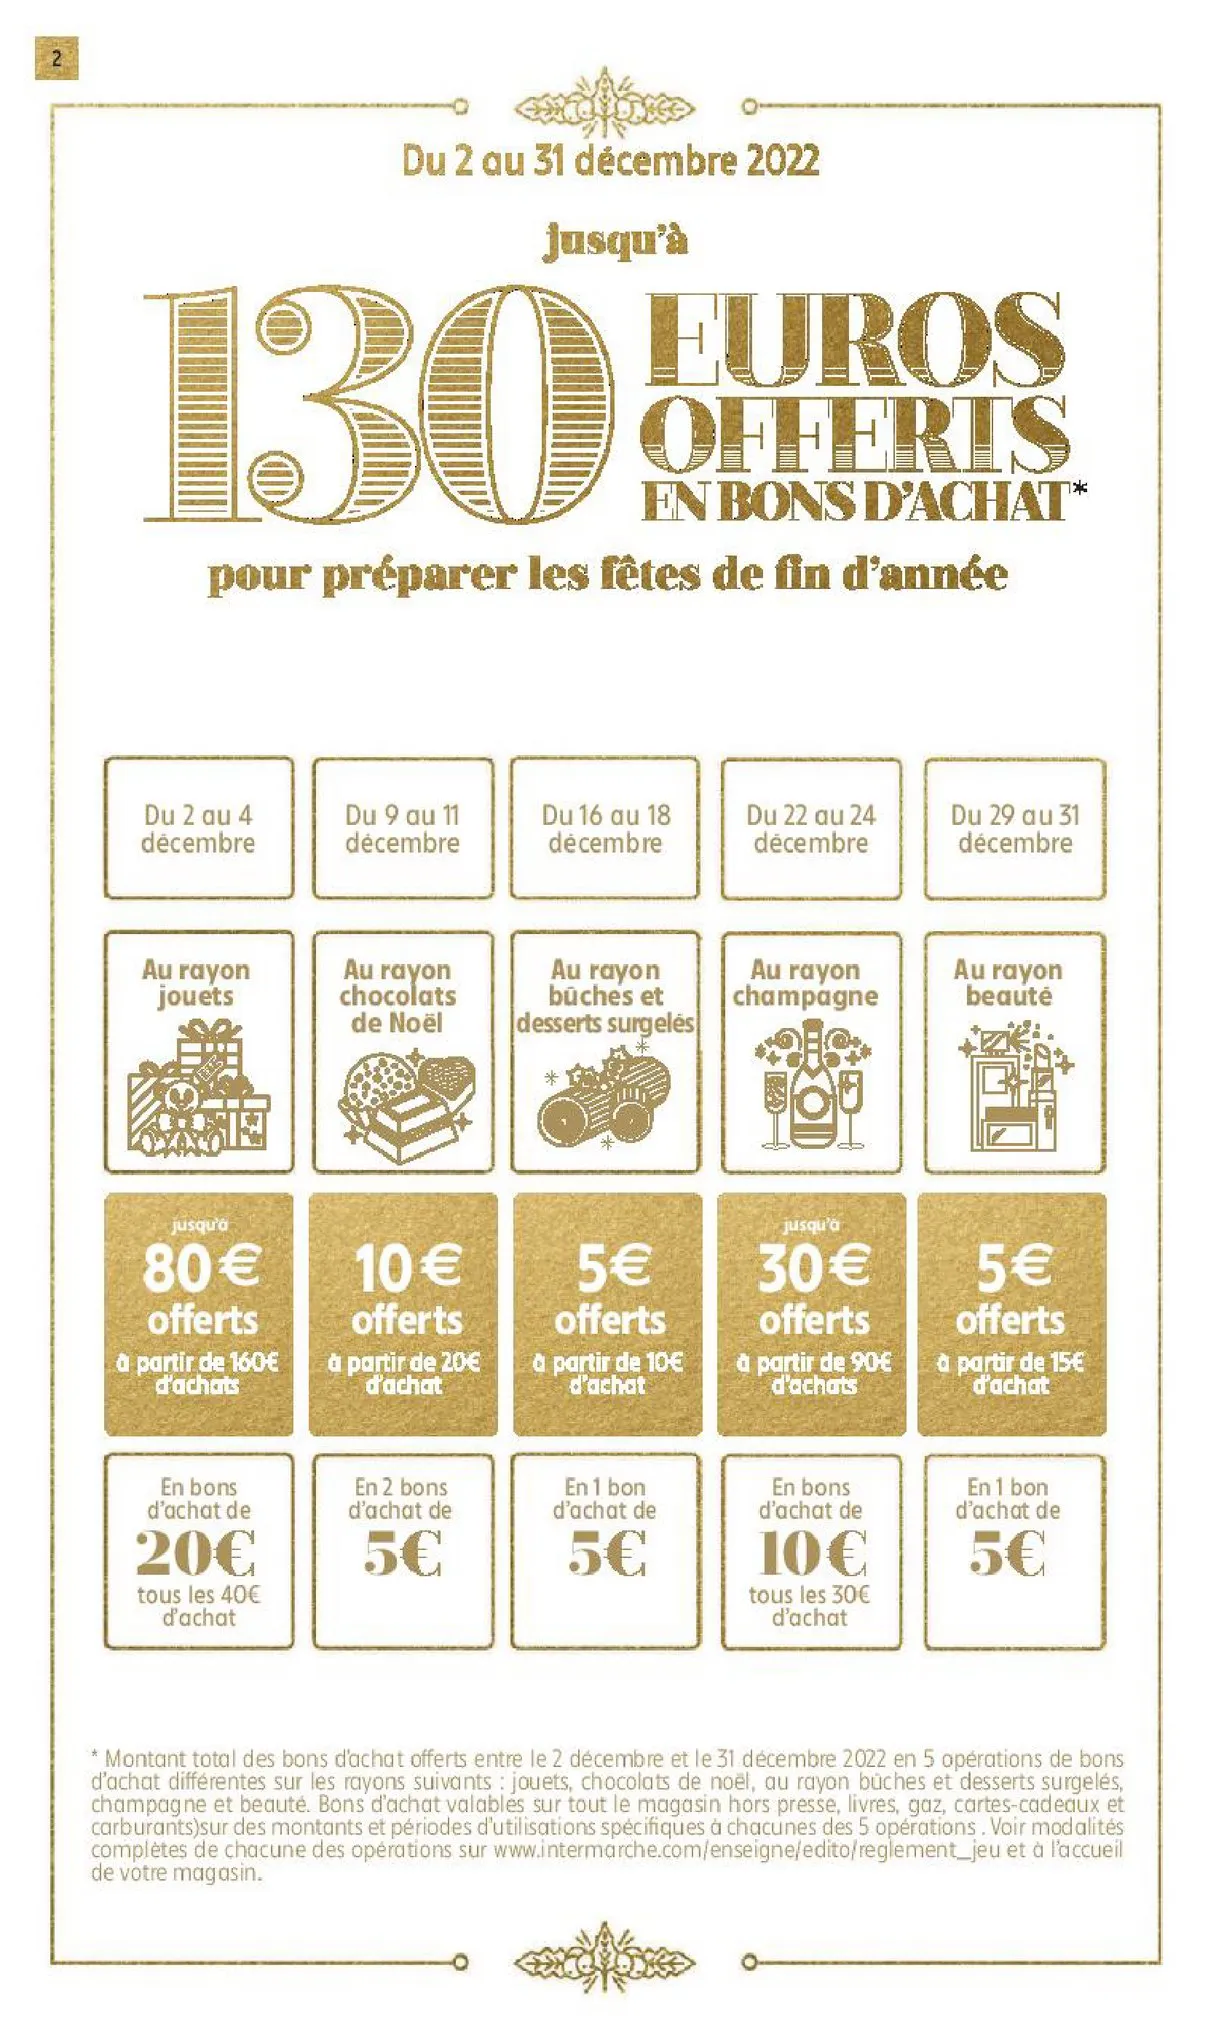 Catalogue 130€ offerts en bons d'achat, page 00002